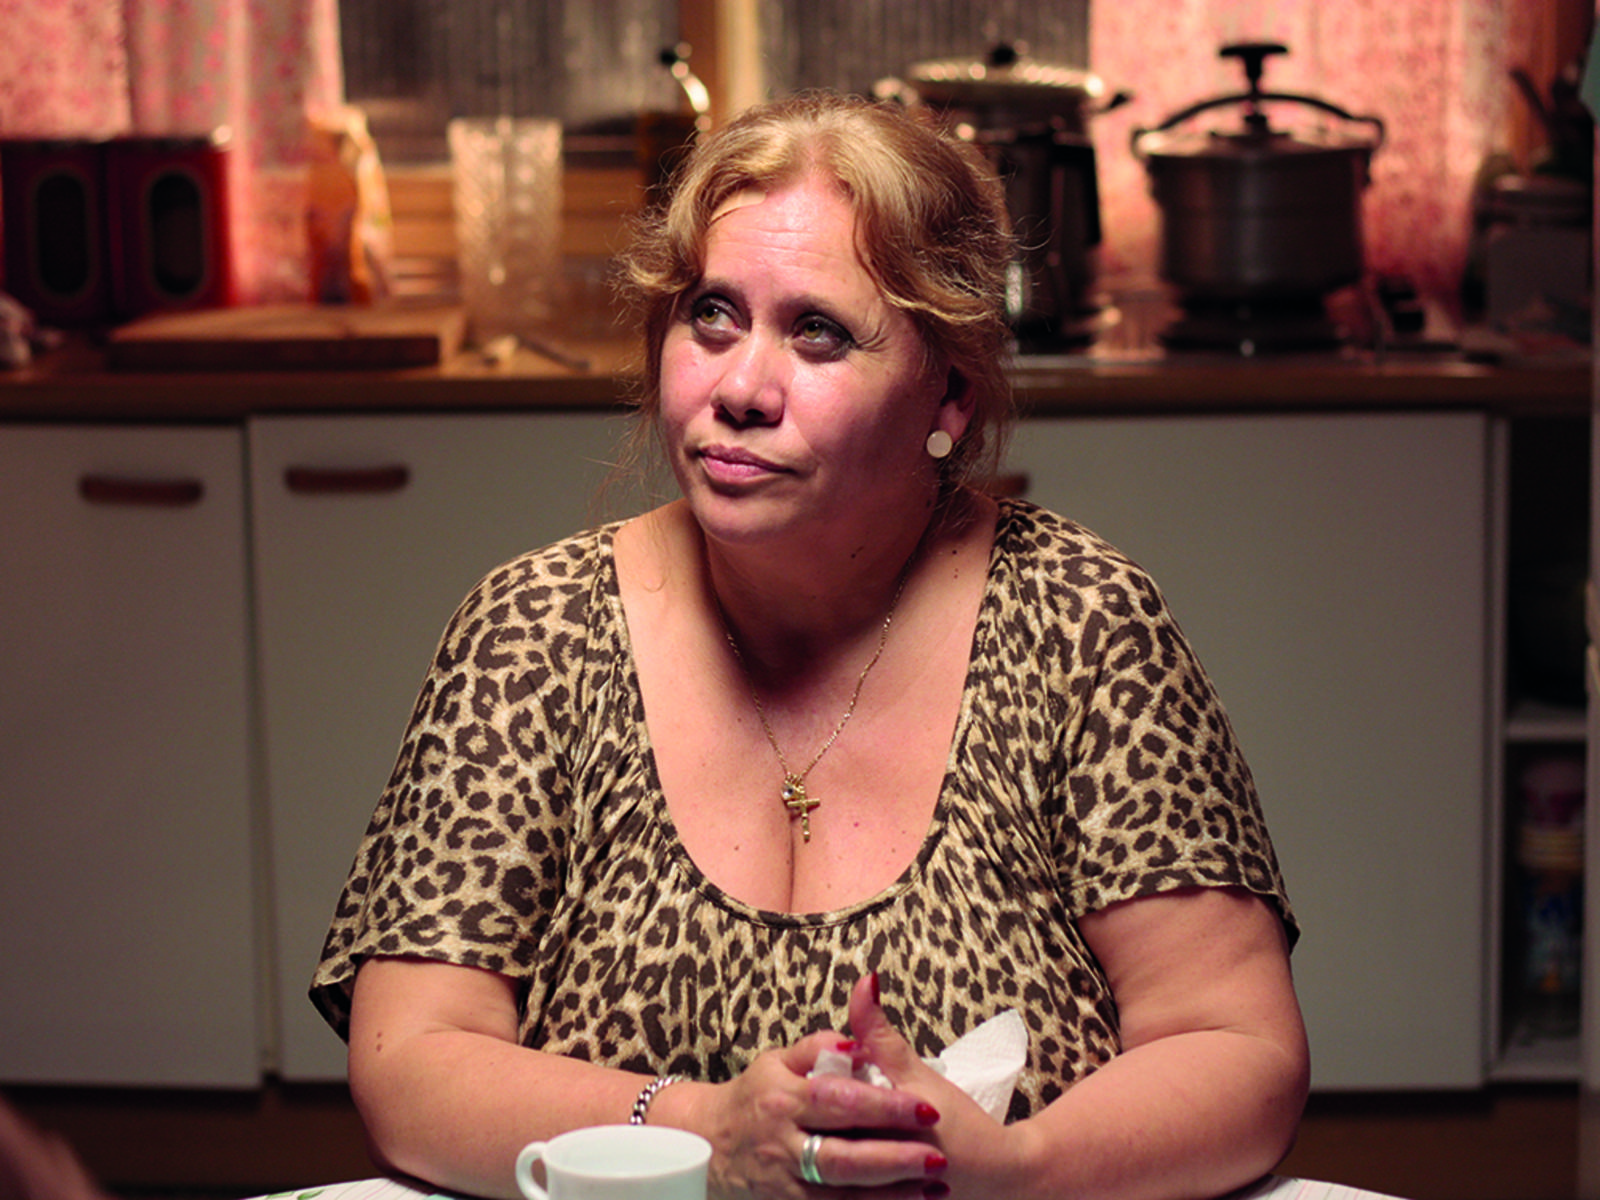 Eine fast 60jährige Frau sitzt an einem Küchentisch. Sie ist blond und trägt ein Shirt in Leopardenfelloptik. Im Hintergrund eine Küchenzeile.